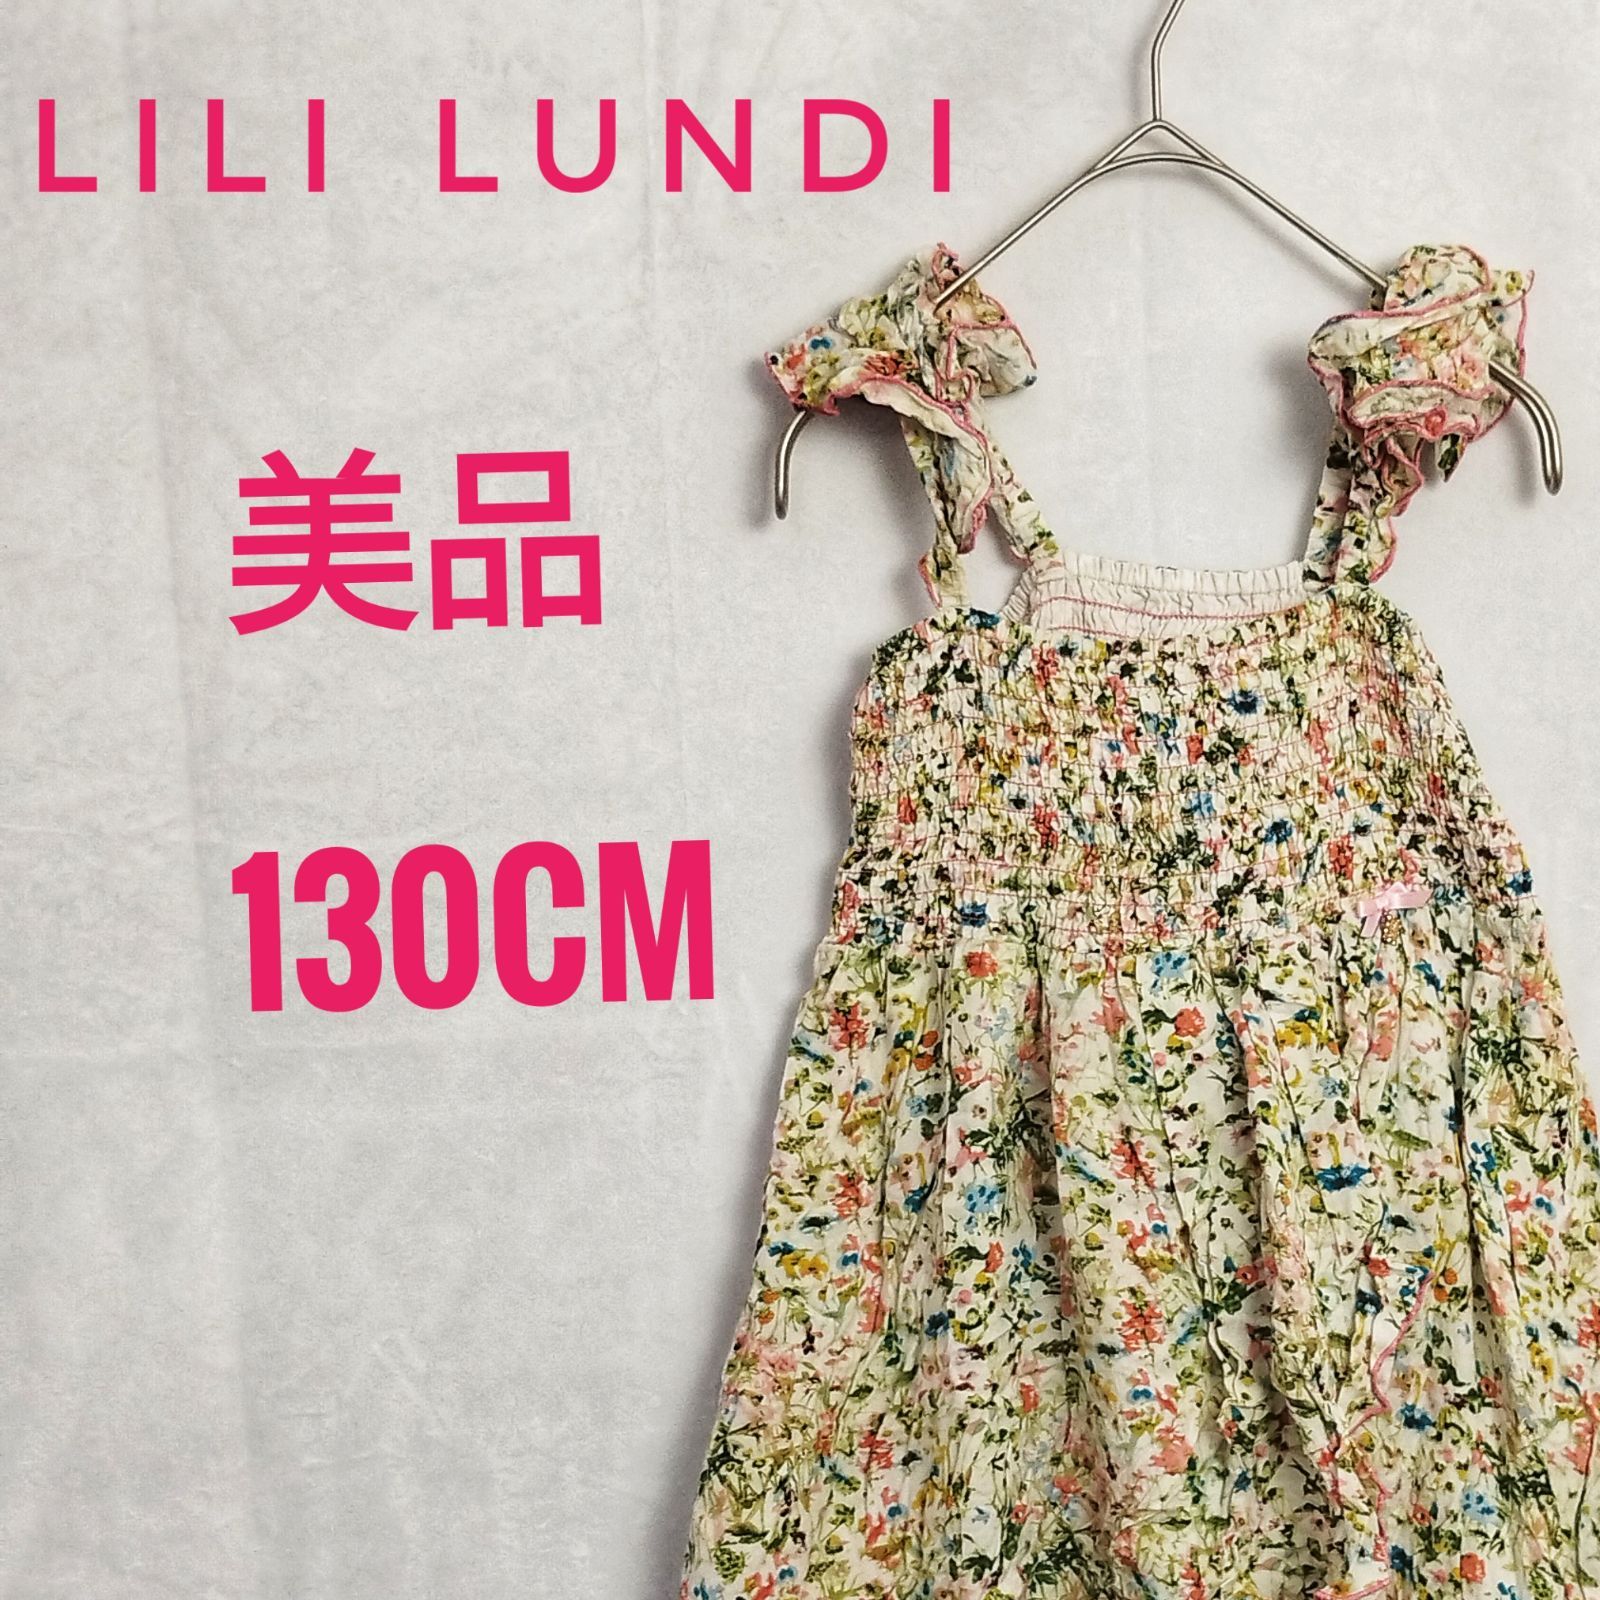 Lili Lundi 130cm 女の子 - フォーマル